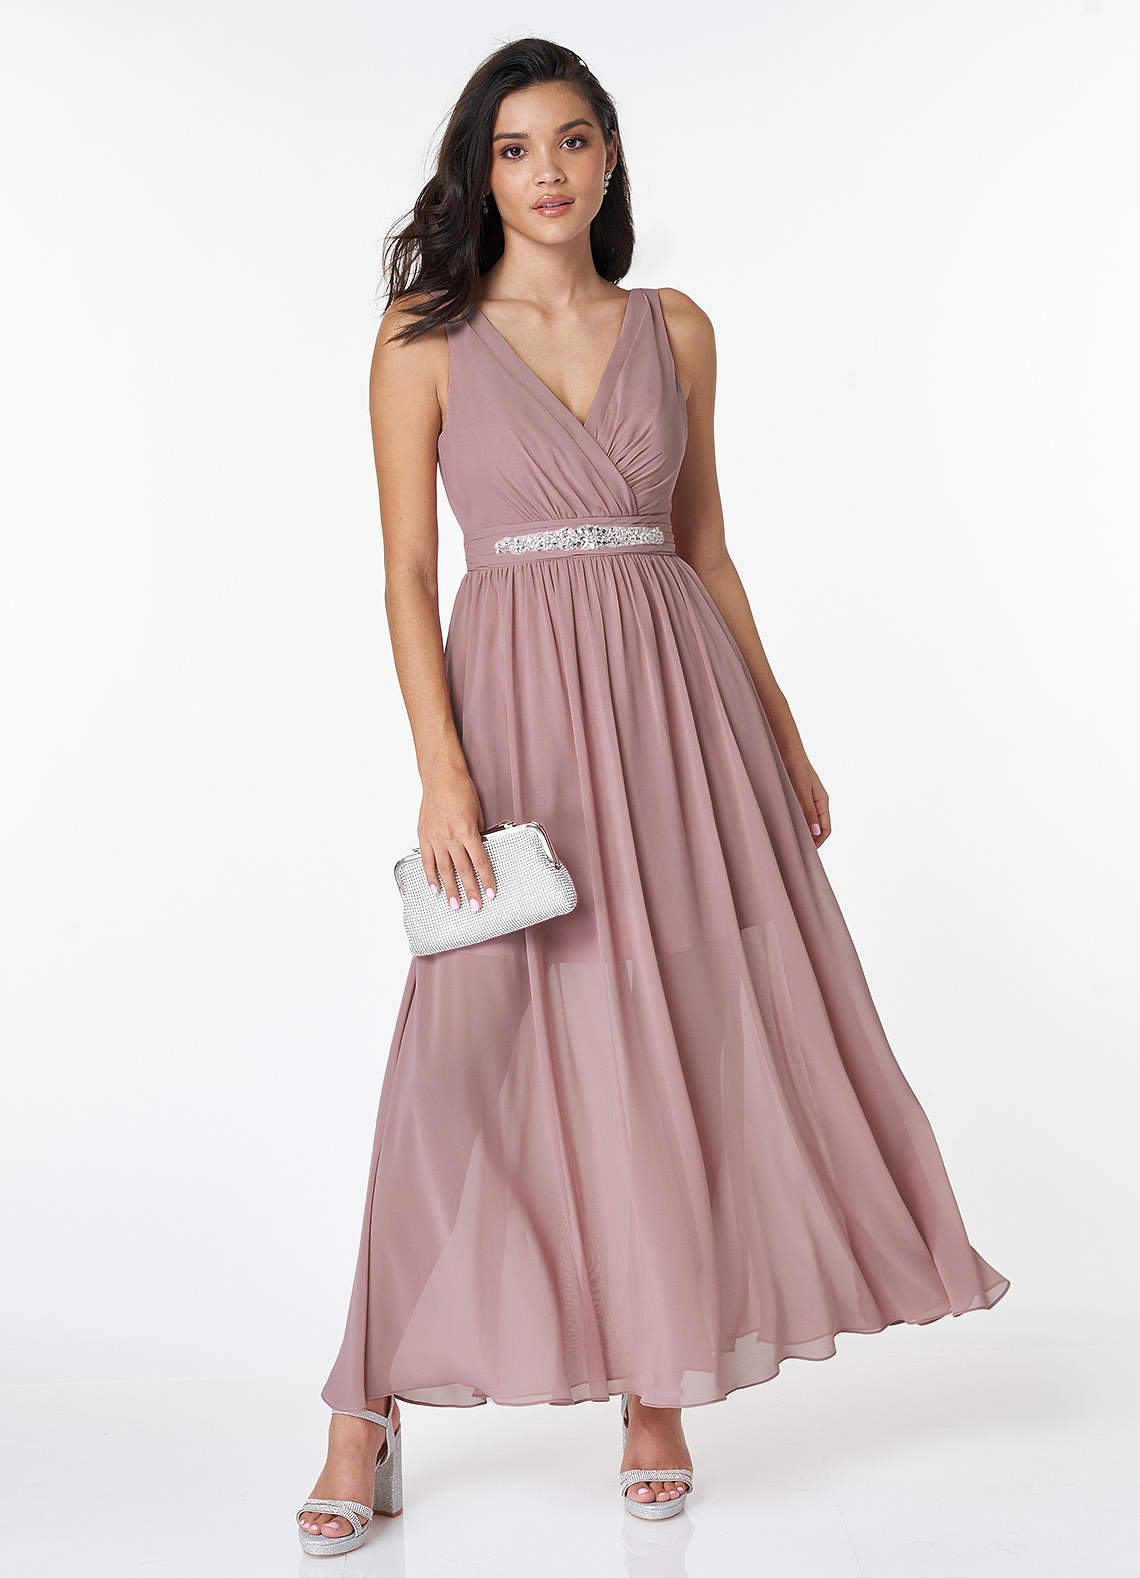 Amelia Rouge Pink Sleeveless Maxi Dress image1